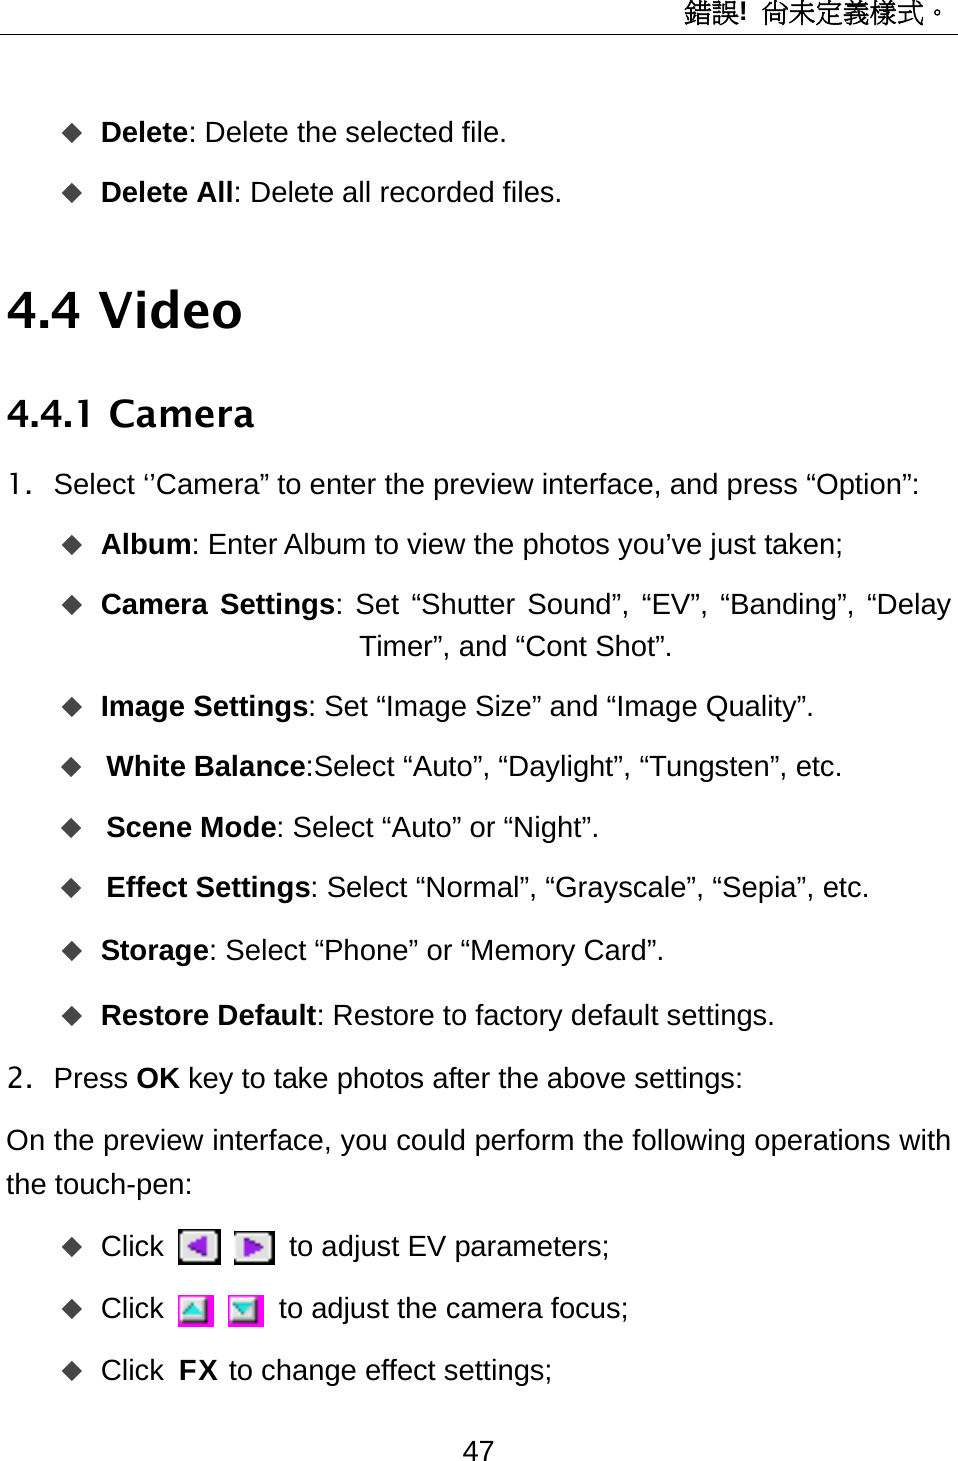 錯誤!  尚未定義樣式。 47  Delete: Delete the selected file.  Delete All: Delete all recorded files. 4.4 Video 4.4.1 Camera 1.  Select ‘’Camera” to enter the preview interface, and press “Option”:  Album: Enter Album to view the photos you’ve just taken;  Camera Settings: Set “Shutter Sound”, “EV”, “Banding”, “Delay Timer”, and “Cont Shot”.  Image Settings: Set “Image Size” and “Image Quality”.  White Balance:Select “Auto”, “Daylight”, “Tungsten”, etc.  Scene Mode: Select “Auto” or “Night”.  Effect Settings: Select “Normal”, “Grayscale”, “Sepia”, etc.  Storage: Select “Phone” or “Memory Card”.  Restore Default: Restore to factory default settings.   2. Press OK key to take photos after the above settings: On the preview interface, you could perform the following operations with the touch-pen:    Click    to adjust EV parameters;  Click    to adjust the camera focus;  Click FX to change effect settings; 